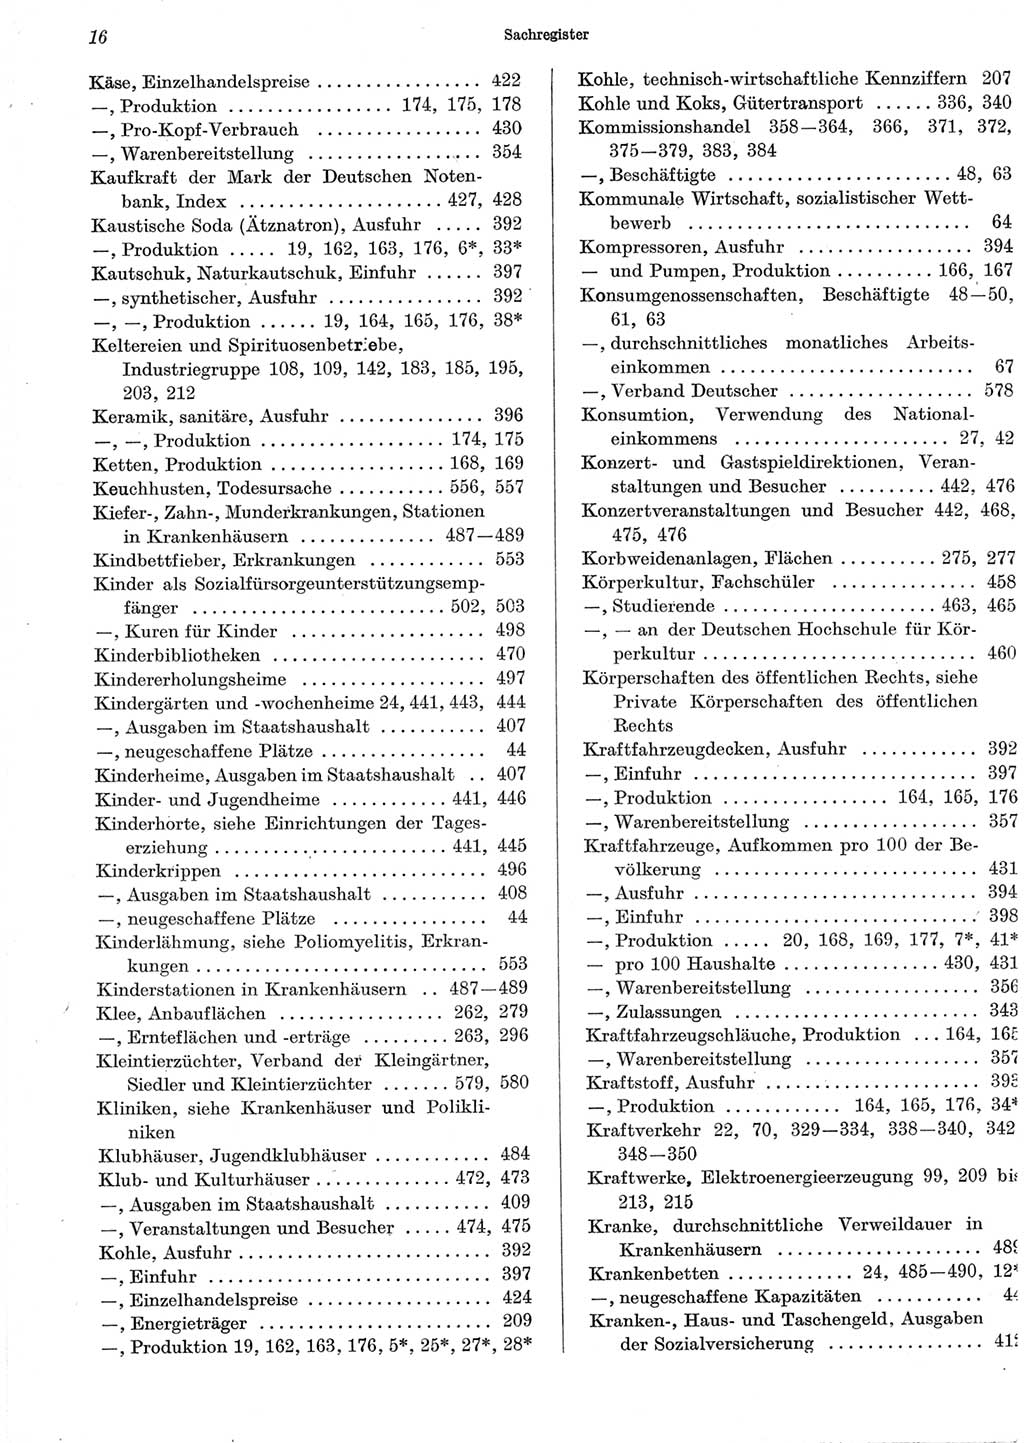 Statistisches Jahrbuch der Deutschen Demokratischen Republik (DDR) 1965, Seite 16 (Stat. Jb. DDR 1965, S. 16)